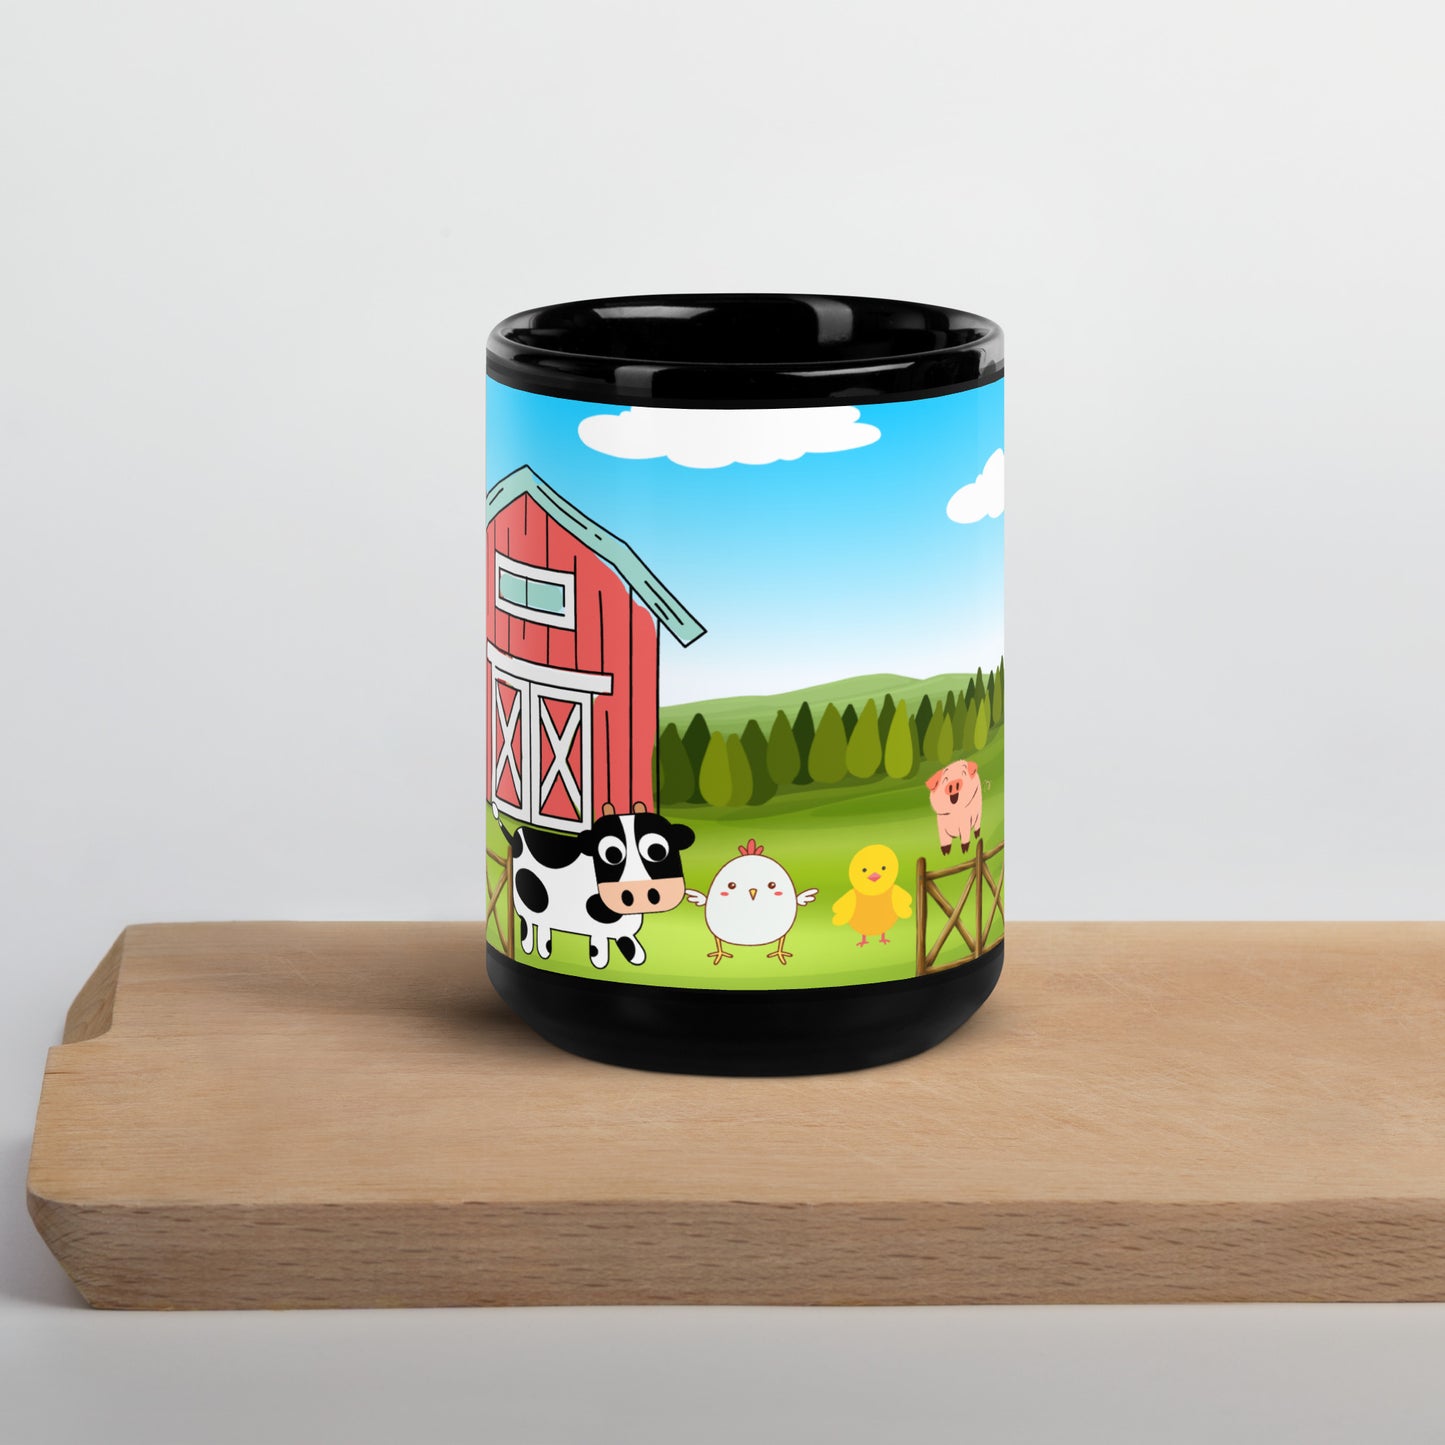 Tazes Farm Coffee Mug